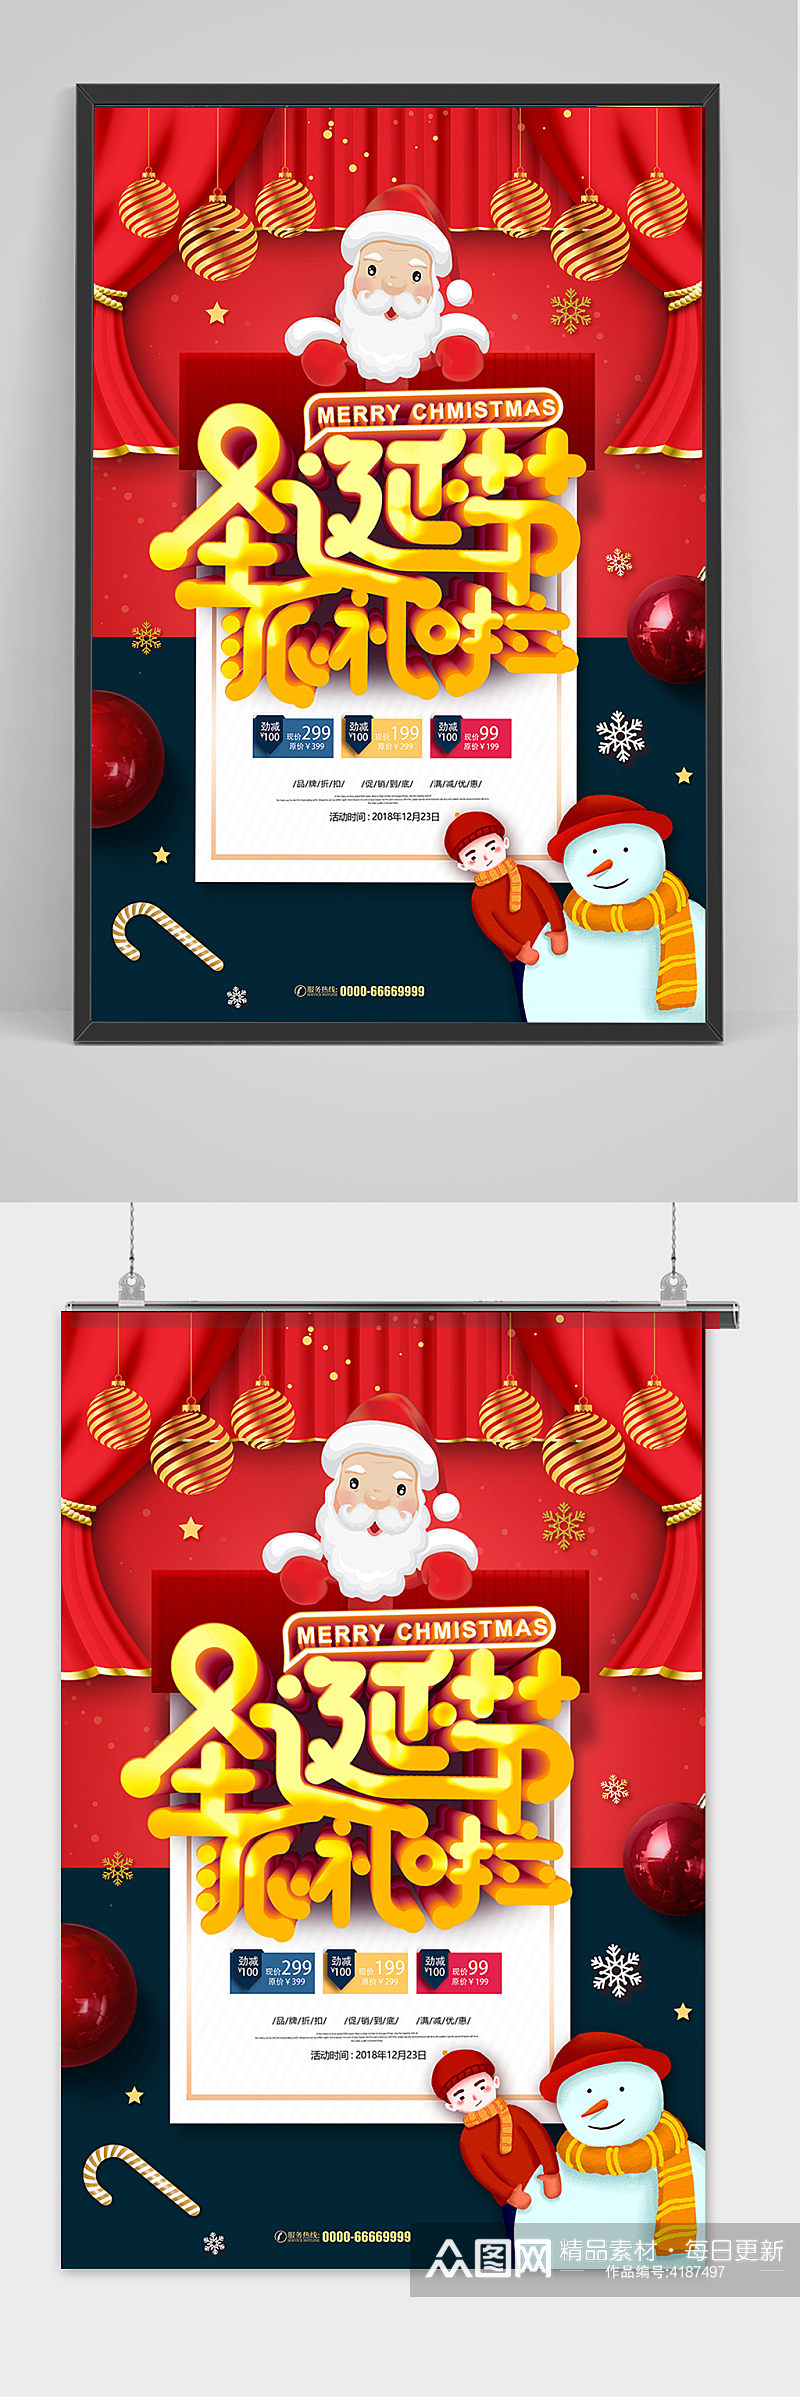 时尚大气红色喜庆背景圣诞节派礼了宣传海报素材